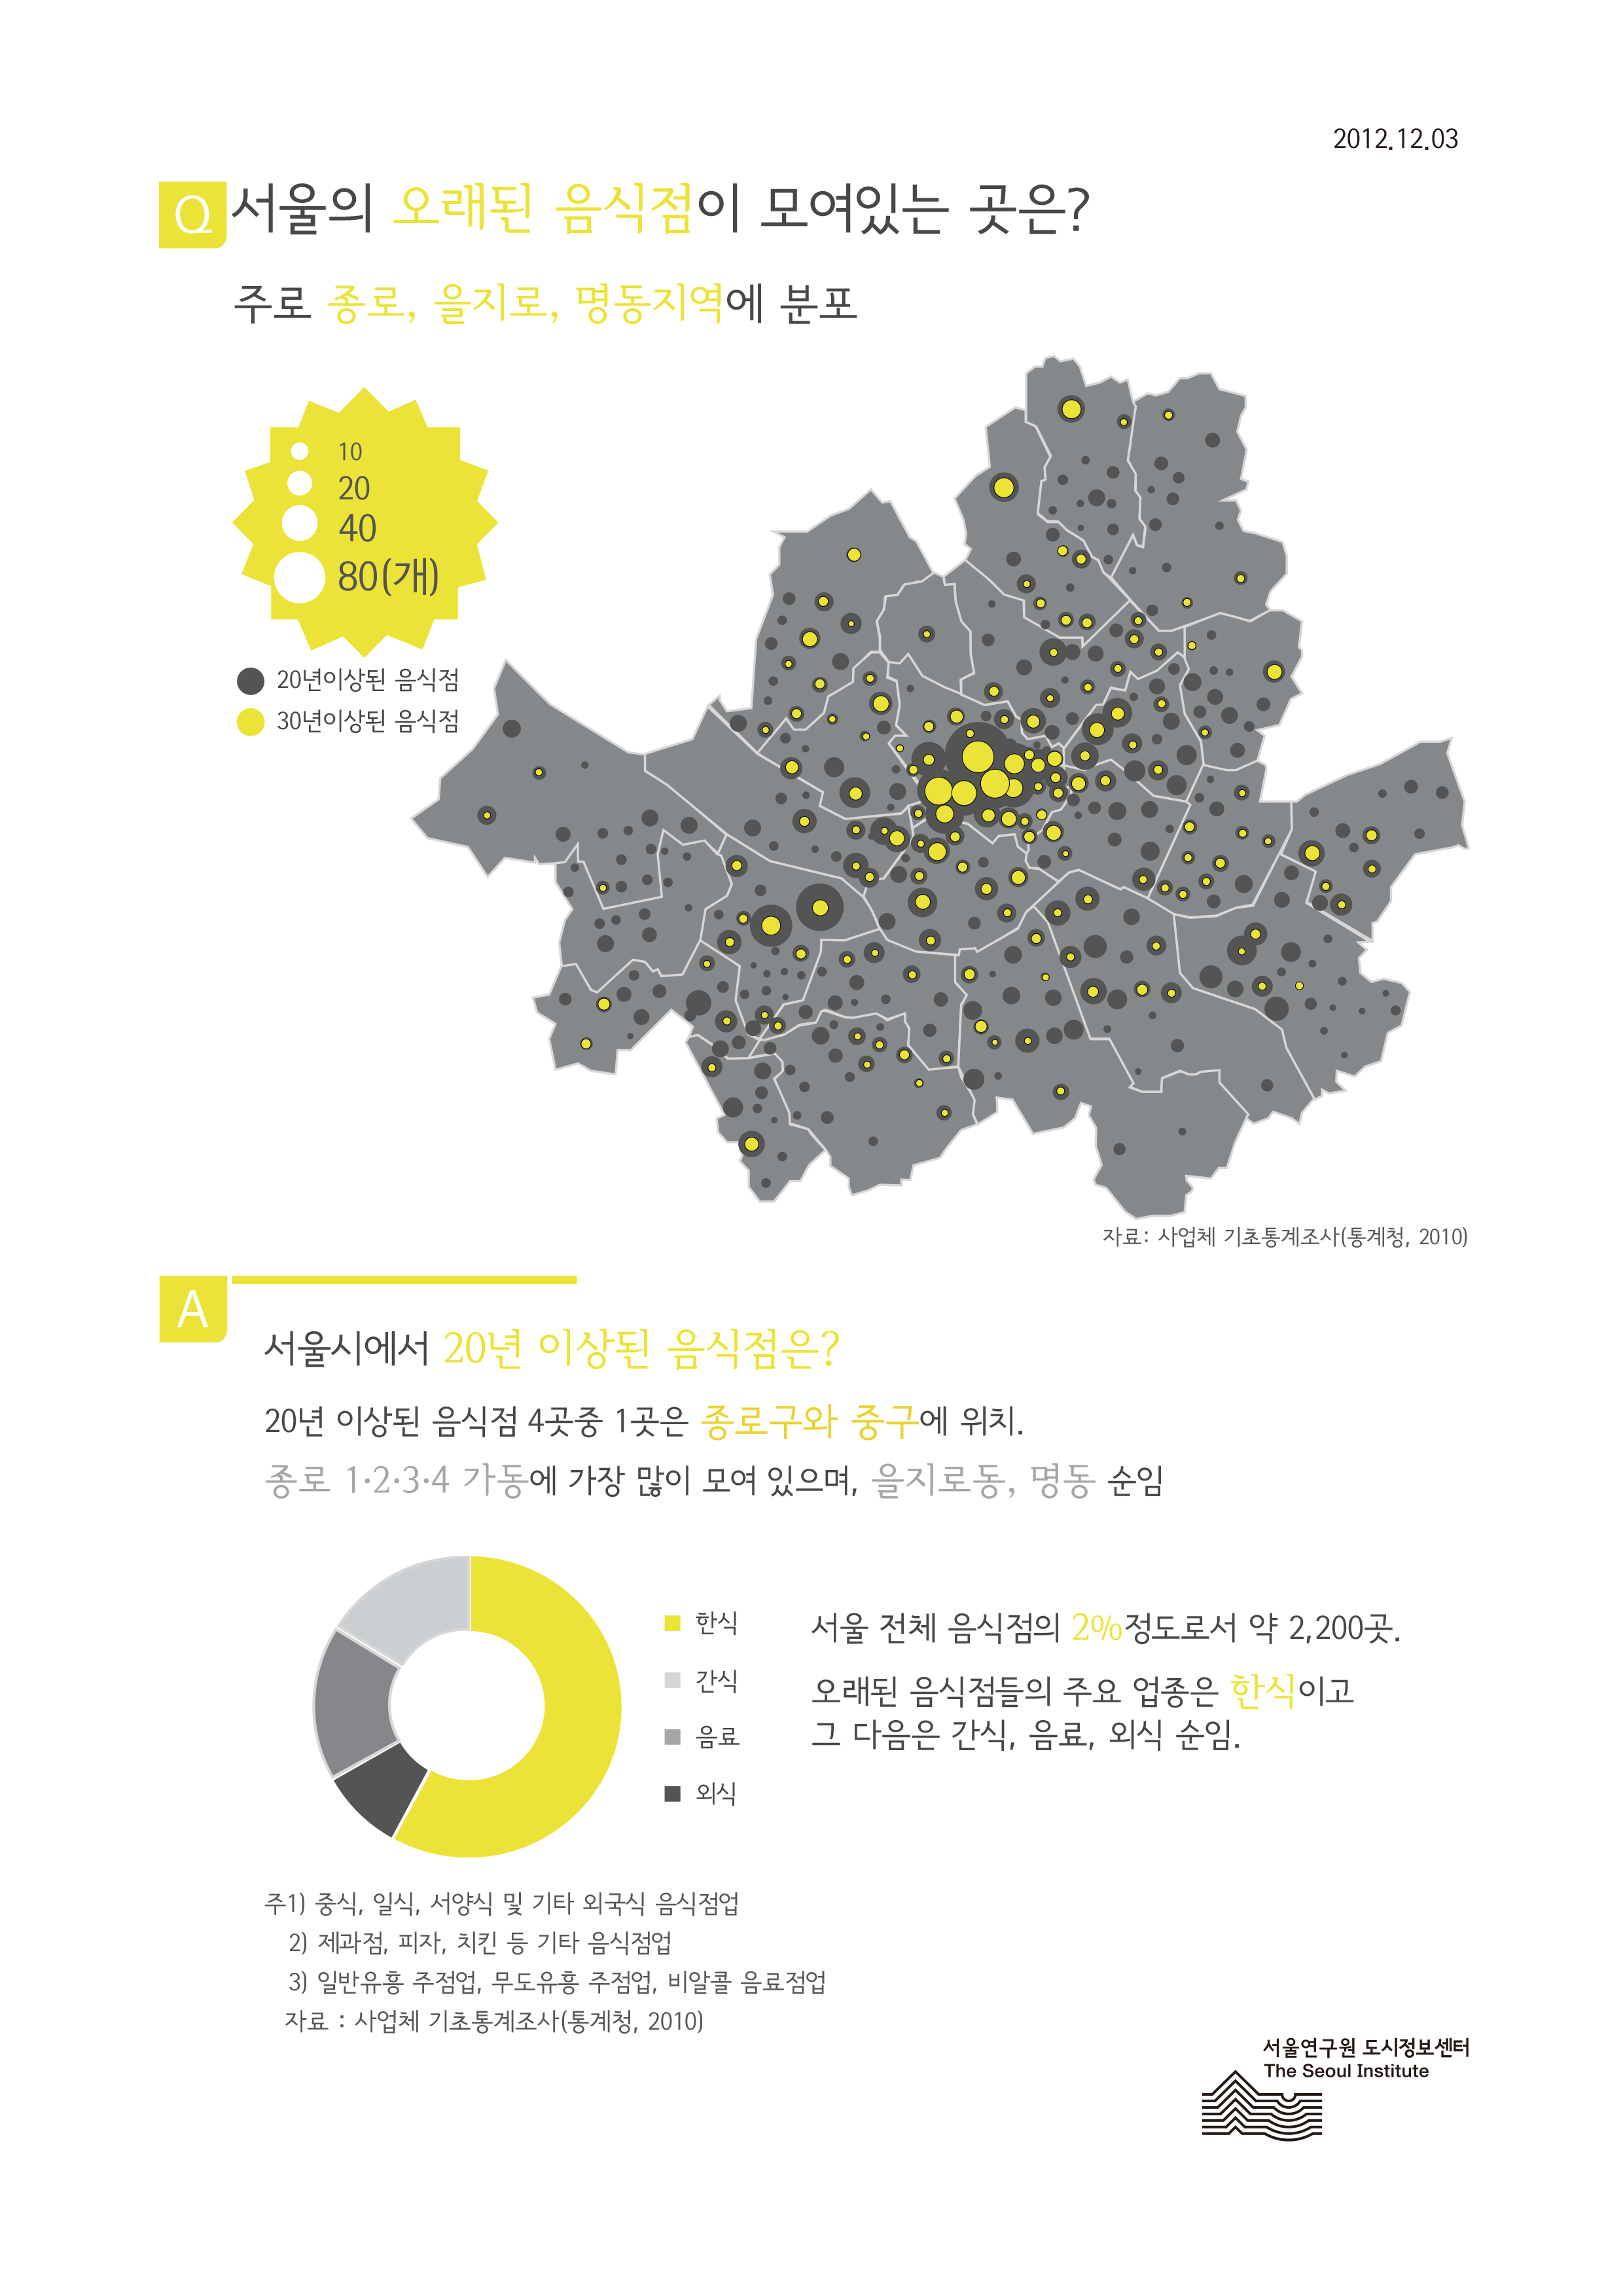 서울의 오래된 음식점이 모여있는 곳은? 서울인포그래픽스 제10호 2012년 12월 3일 서울시에서 20년 이상된 음식점은 주로 종로, 을지로, 명동지역에 분포함으로 정리될 수 있습니다. 인포그래픽으로 제공되는 그래픽은 하단에 표로 자세히 제공됩니다.